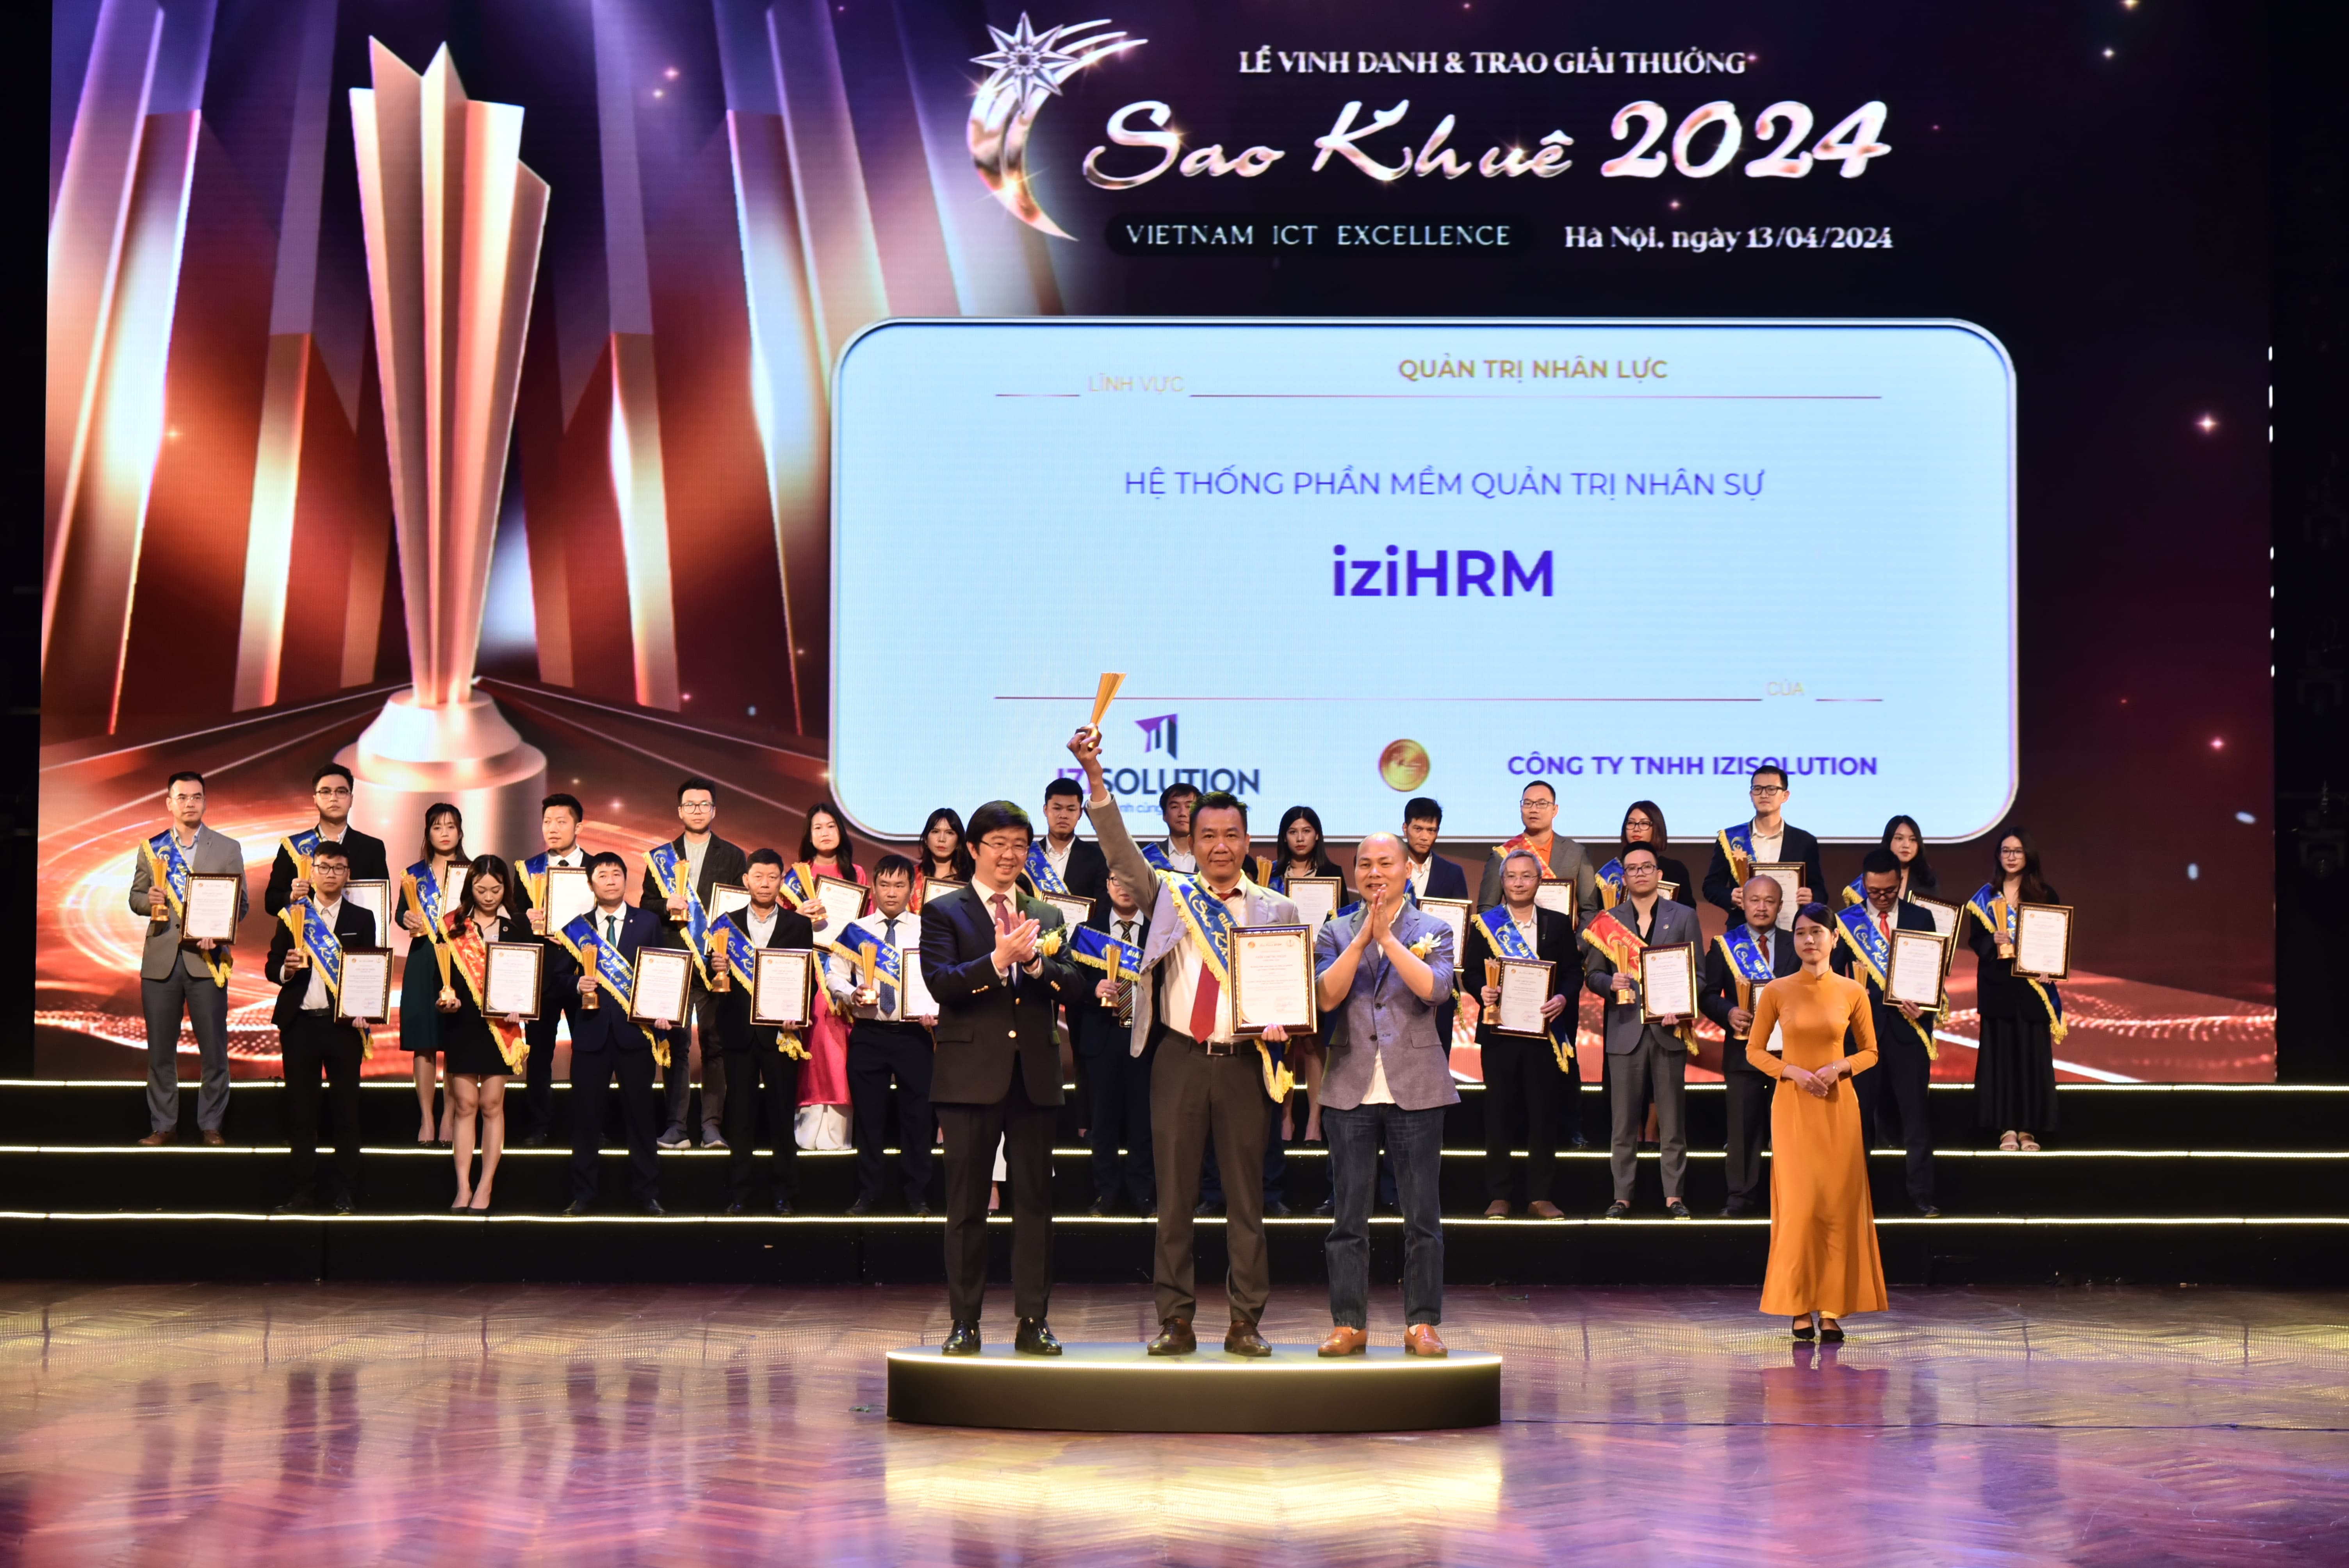 Ông Lê Thanh Tùng - Giám đốc giải pháp công ty TNHH IZISolution vinh dự nhận giải Sao Khuê